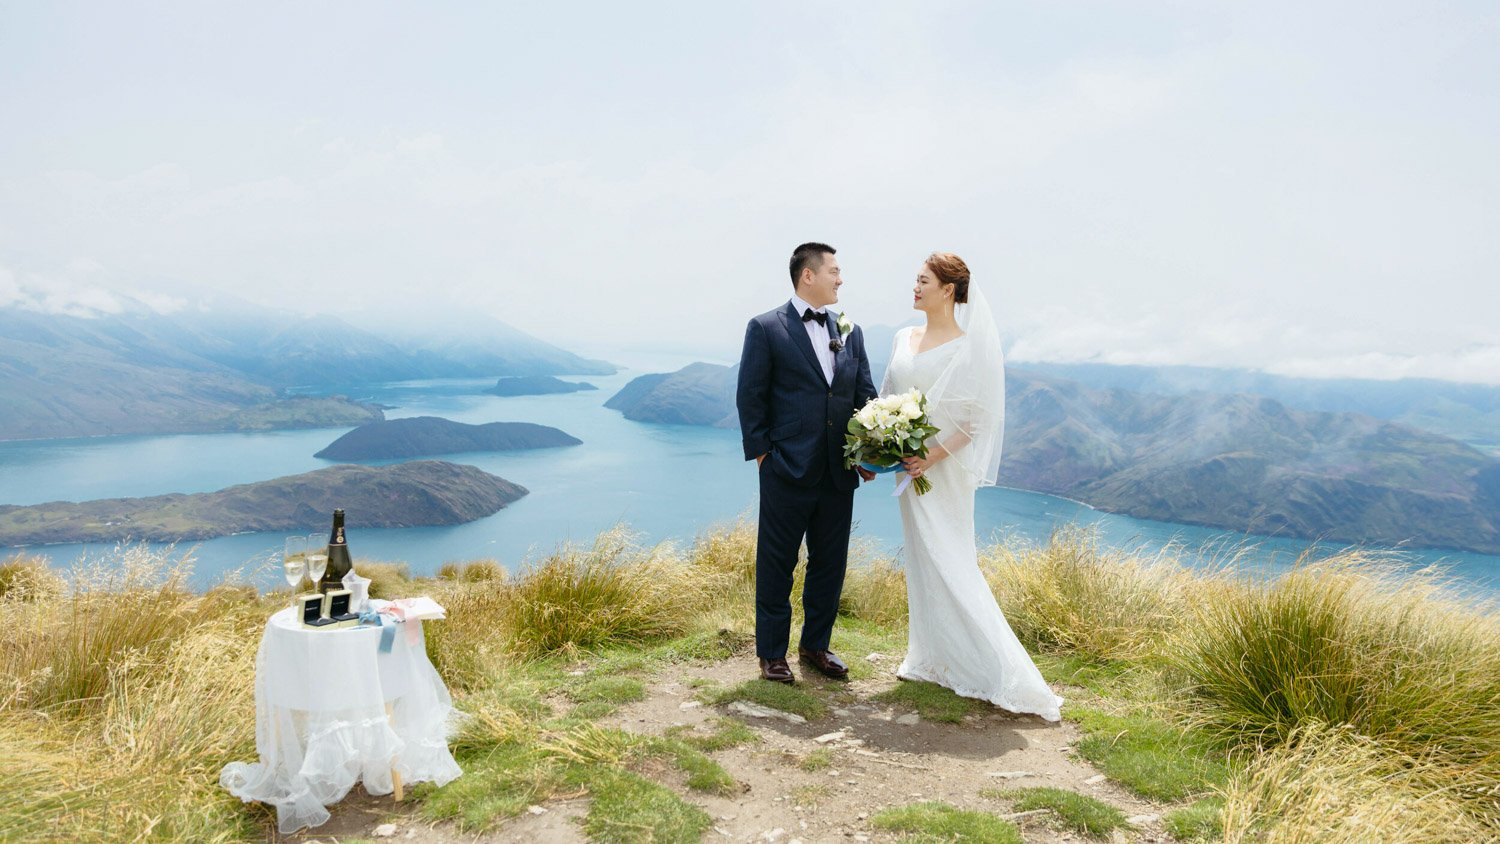 Queenstownn Canyons Lodge outdoor wedding elopement photographer Panda Bay Films-6.jpg